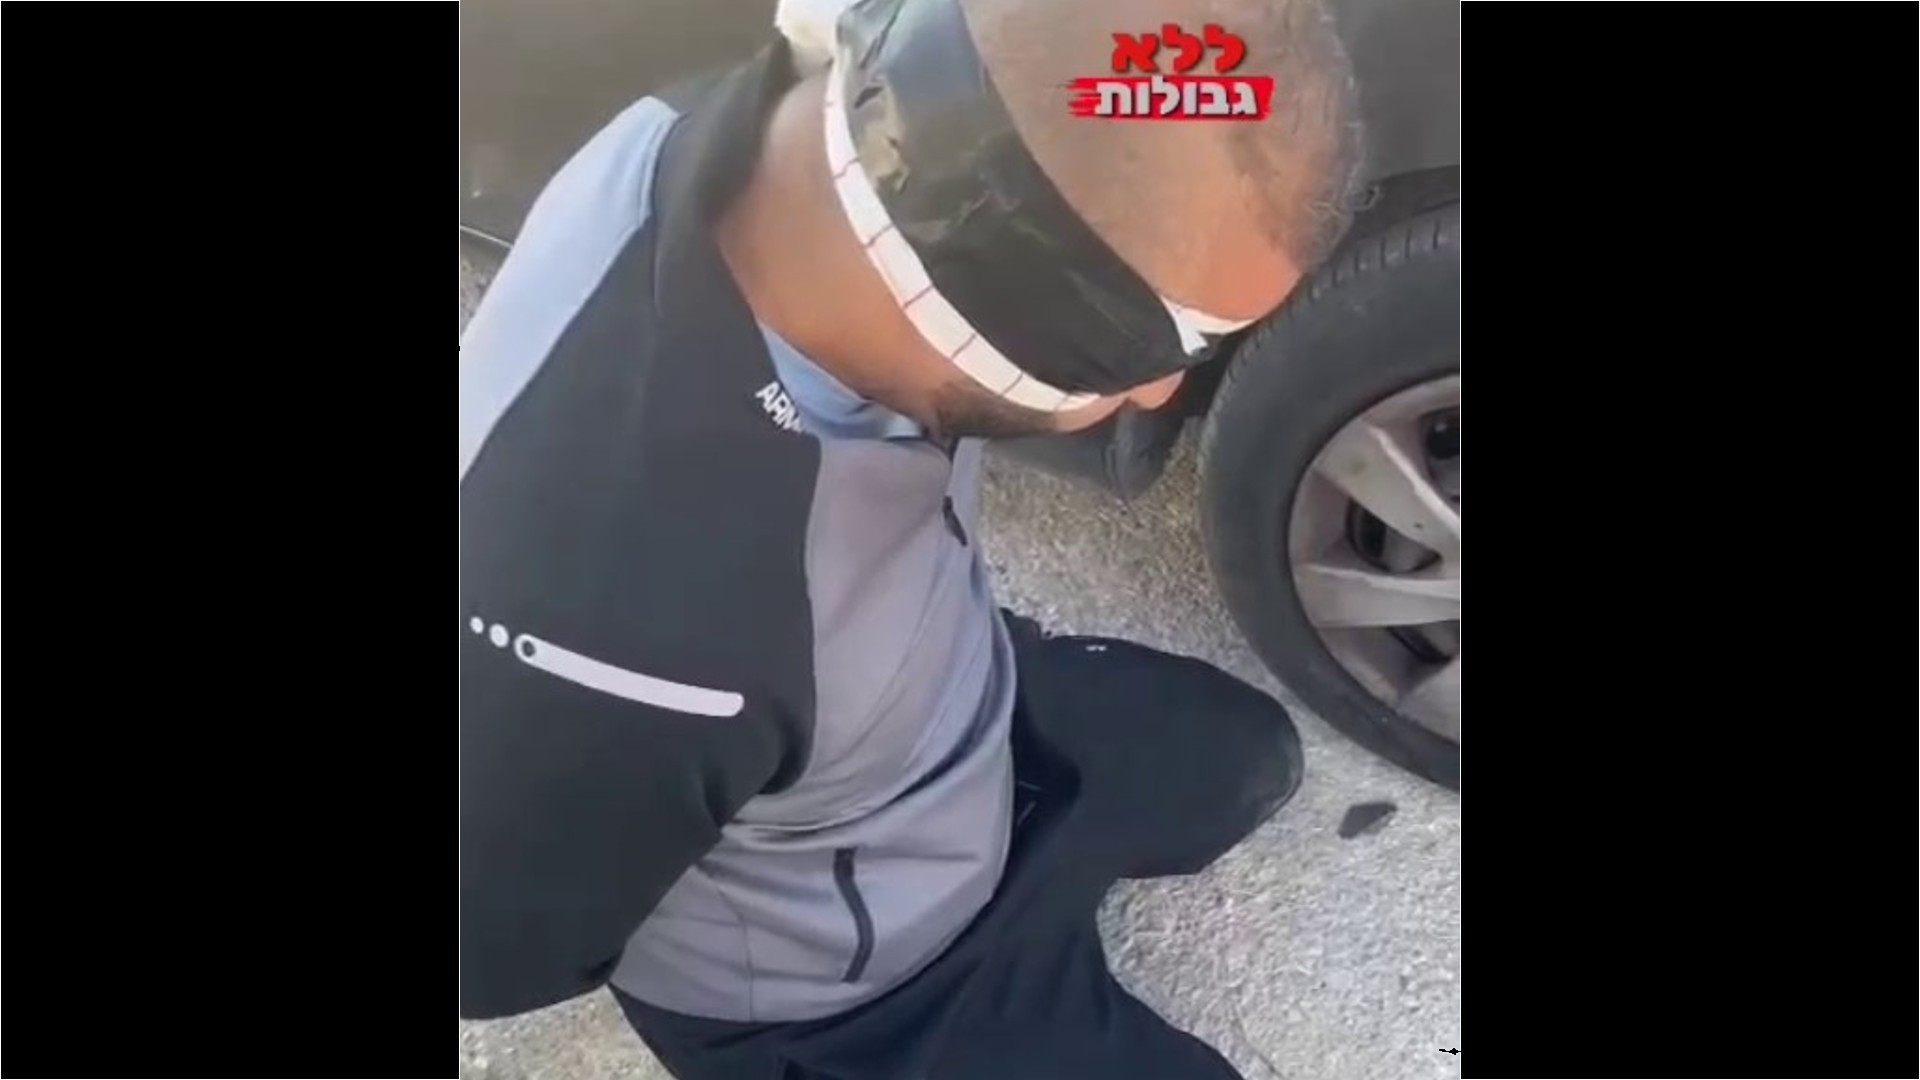 Une vidéo publiée sur une chaîne populaire d’extrême droite israélienne, sur Telegram, montre un homme aux yeux bandés et menotté, à genoux, à côté d’une voiture (Capture d’écran/Telegram)